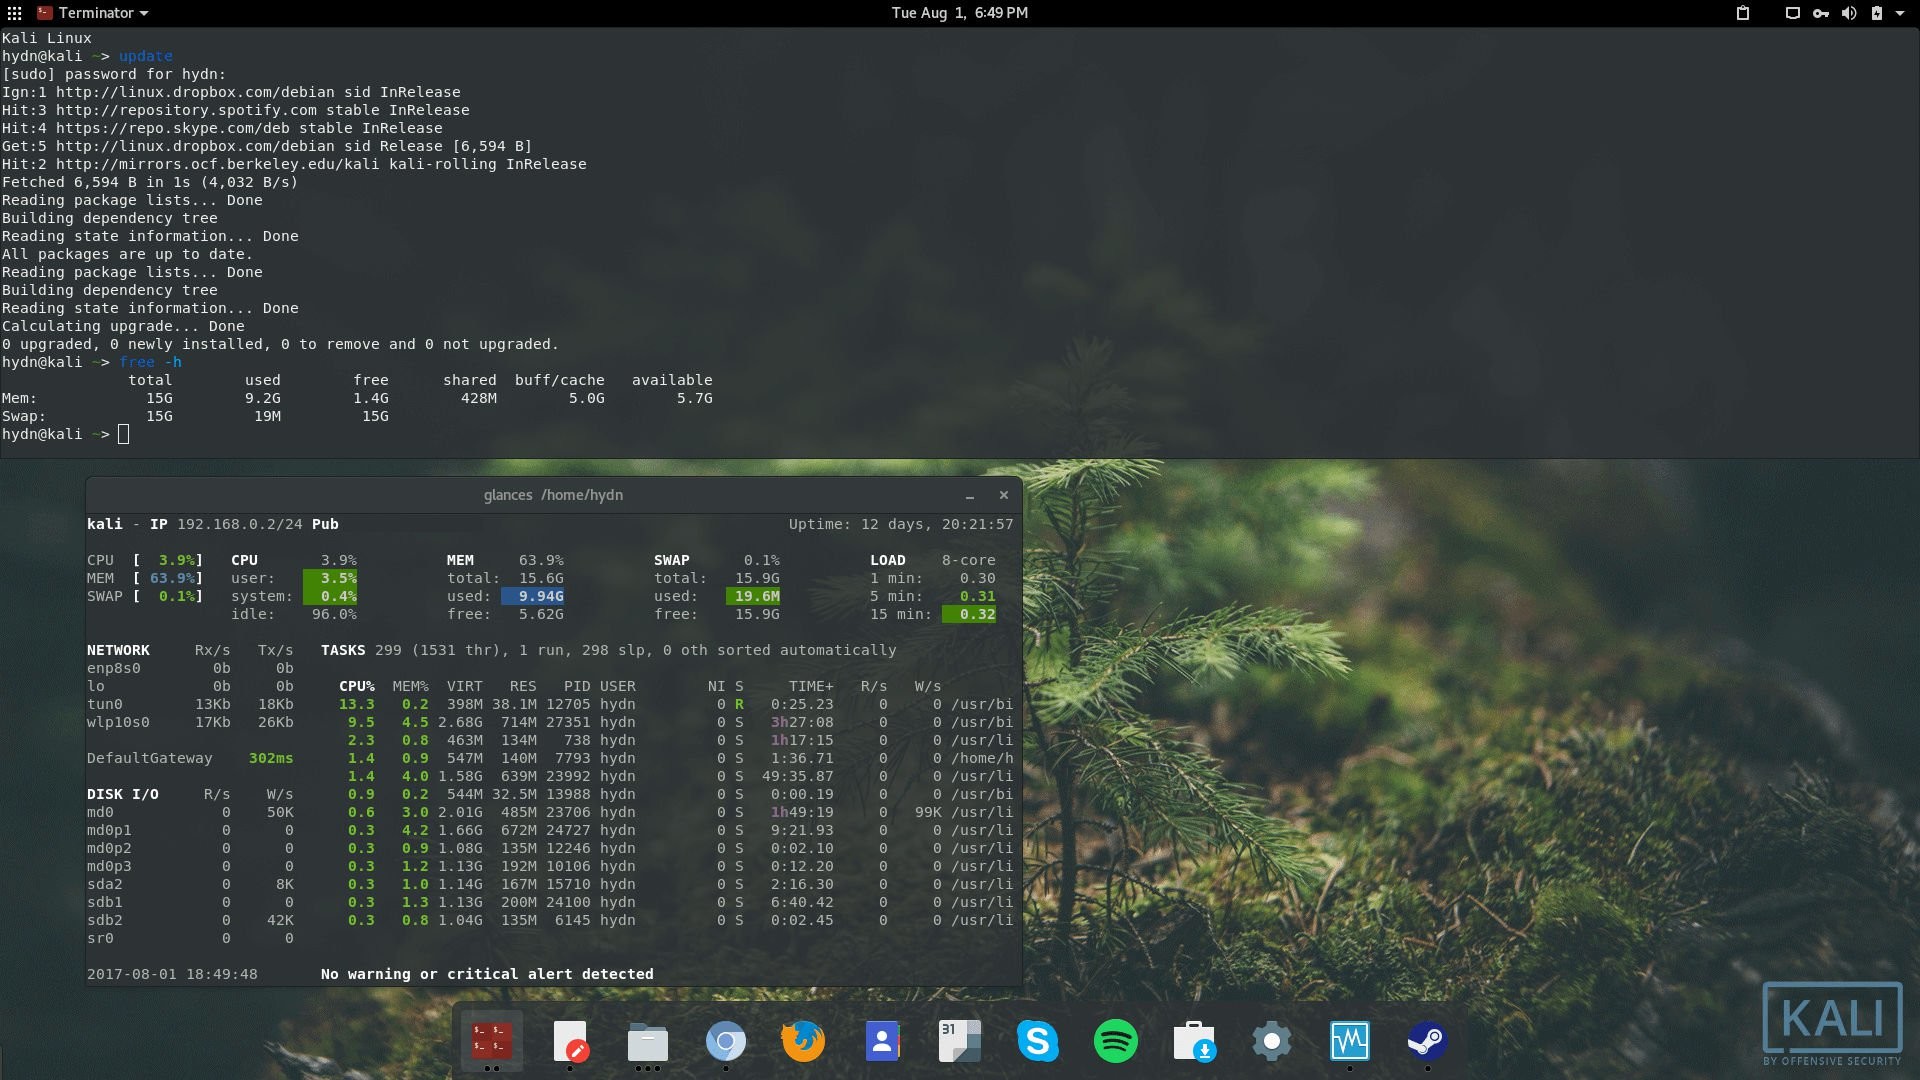 Kali Linux Gnome Desktop - Kali Linux - HD Wallpaper 